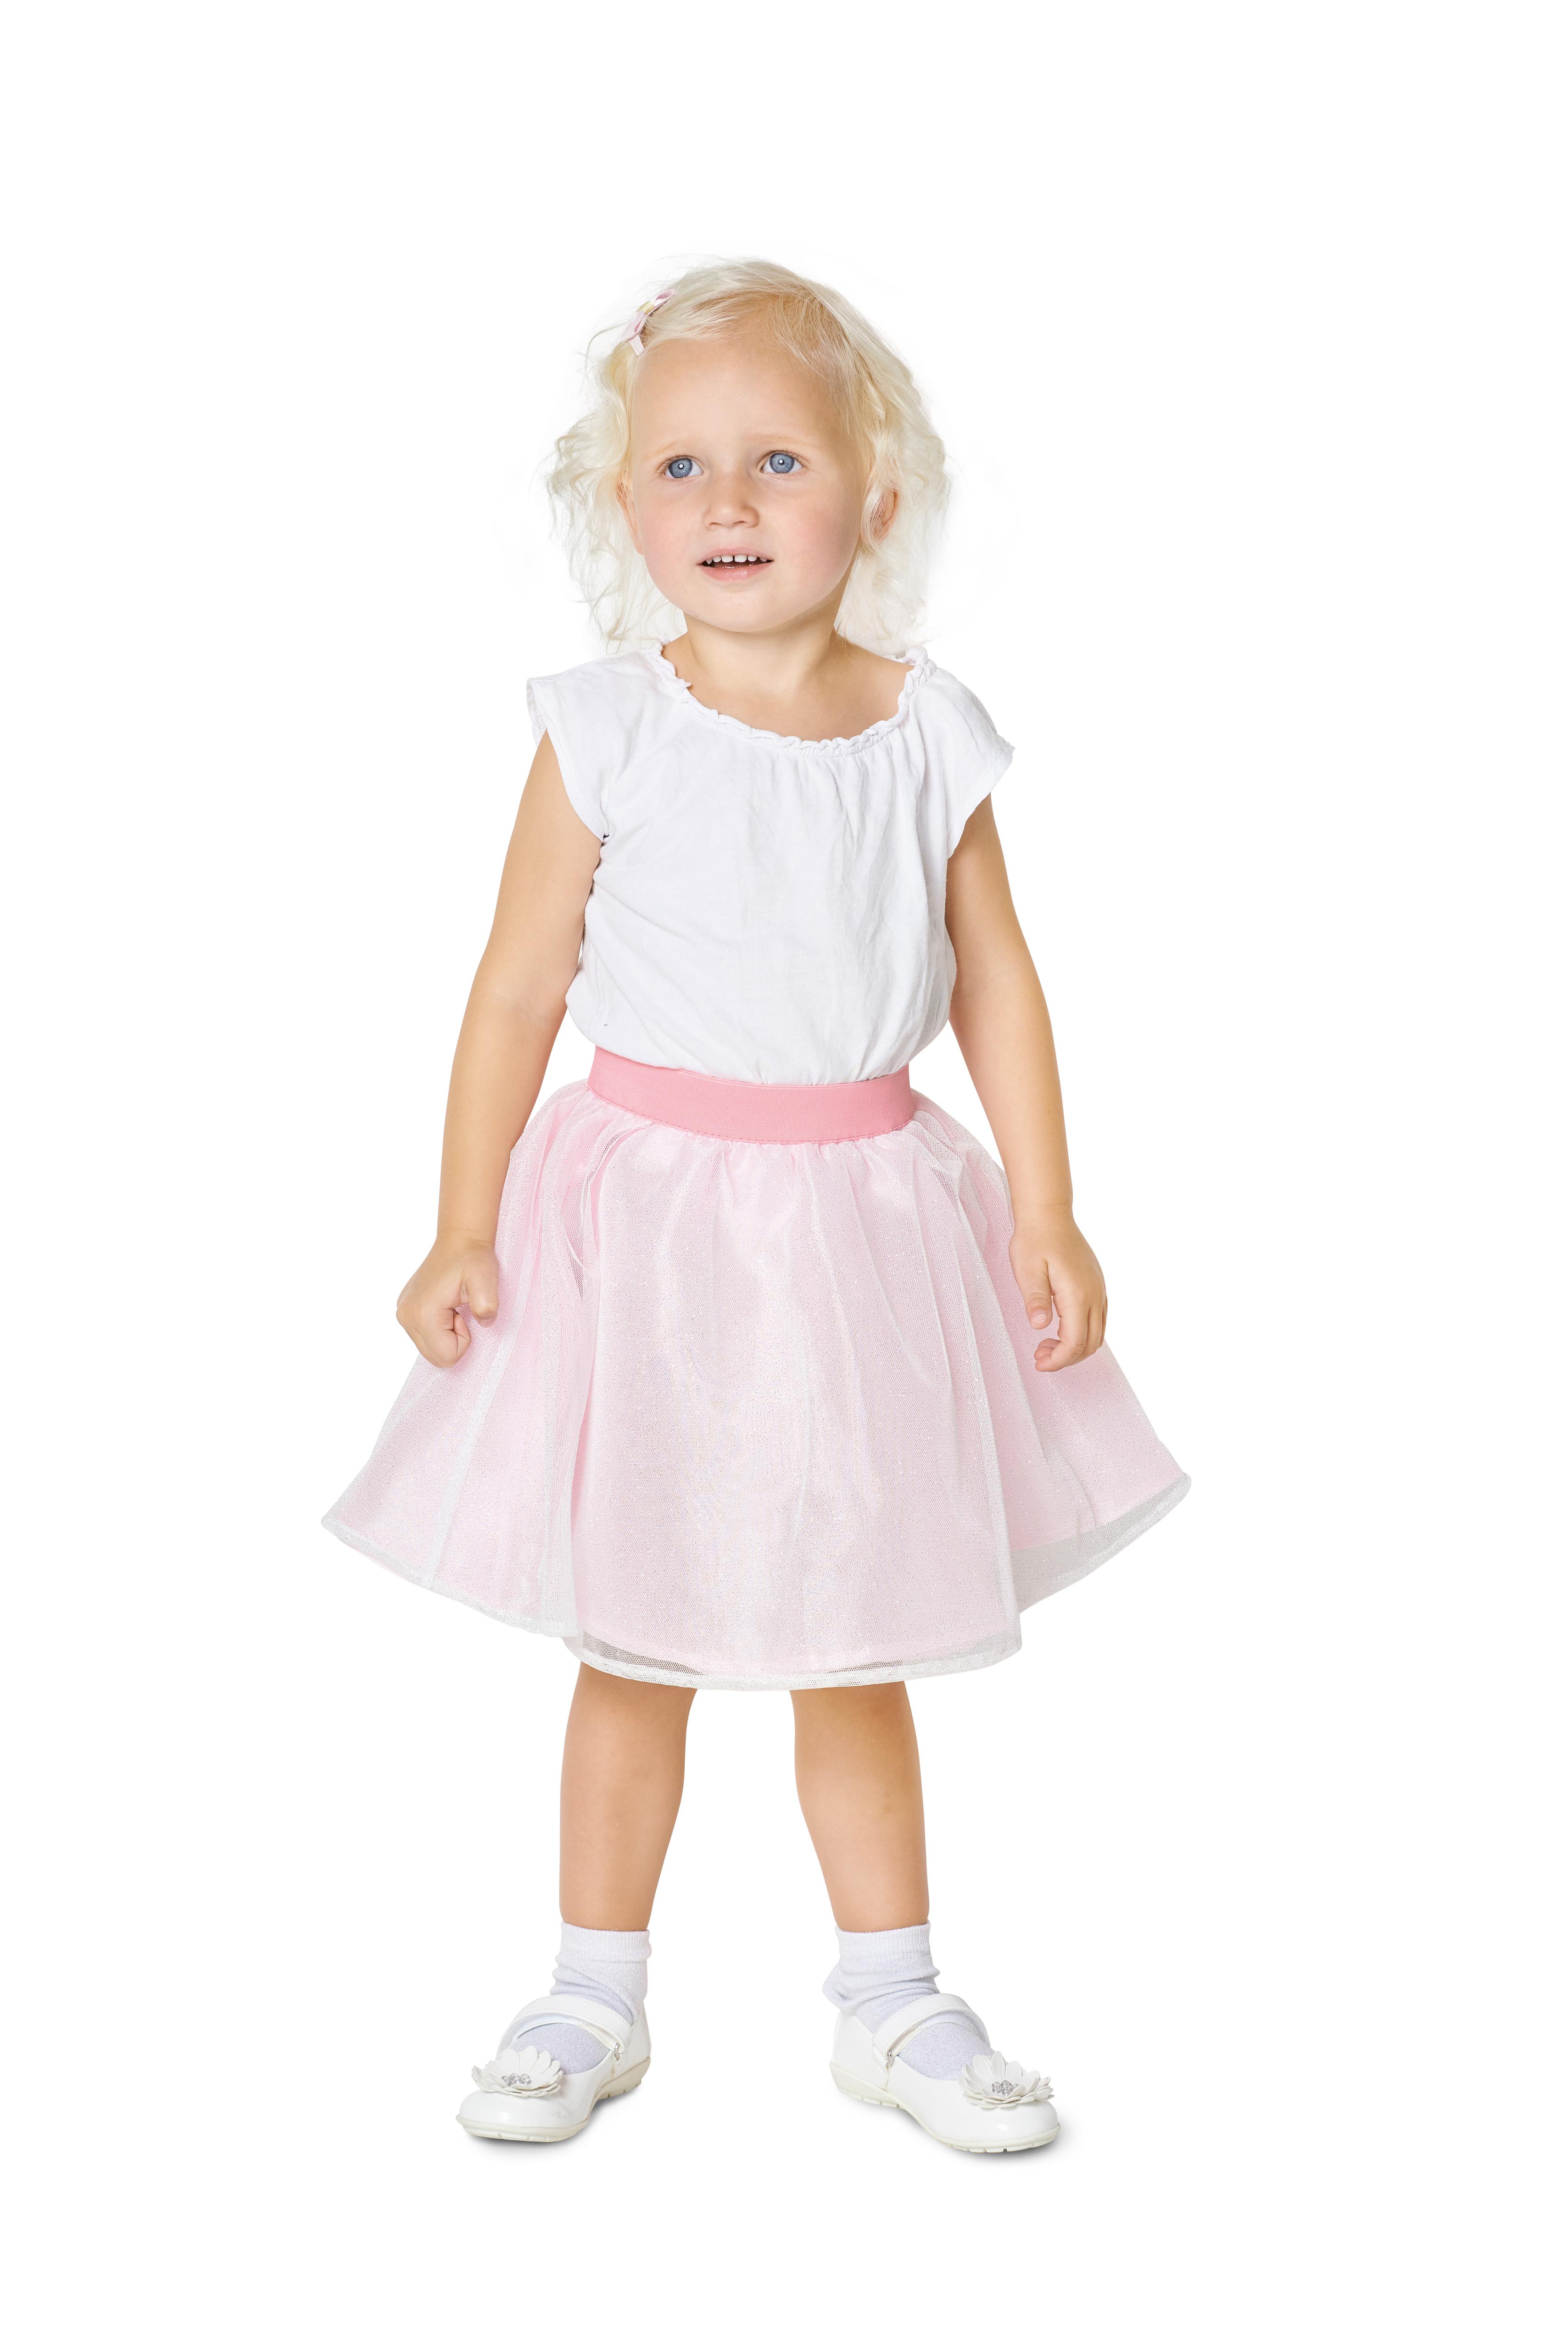 Burda 9319 Child's pinafore skirt